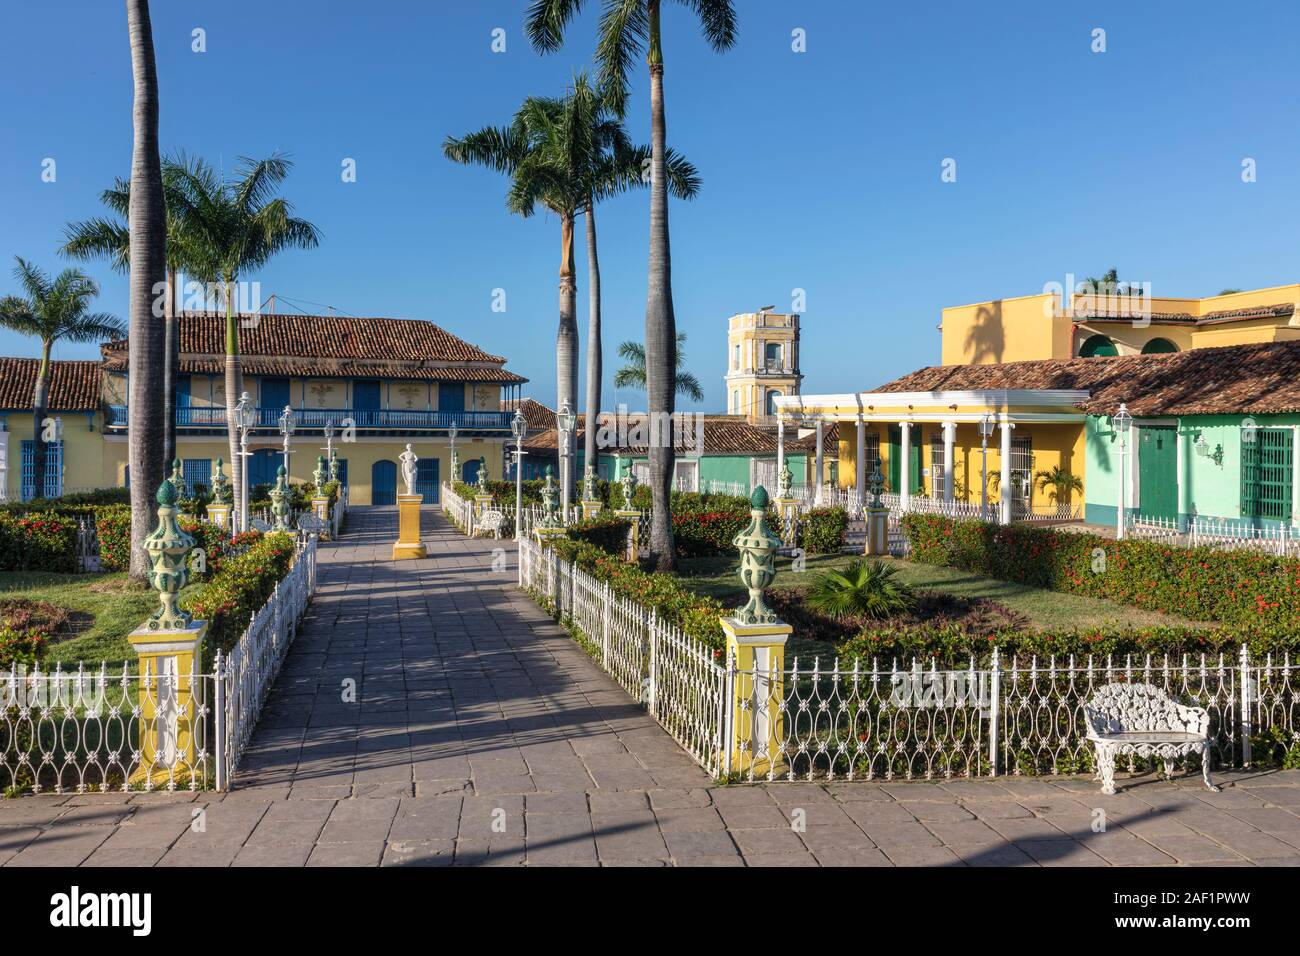 Trinidad, Sancti Spiritus, Cuba, North America Stock Photo